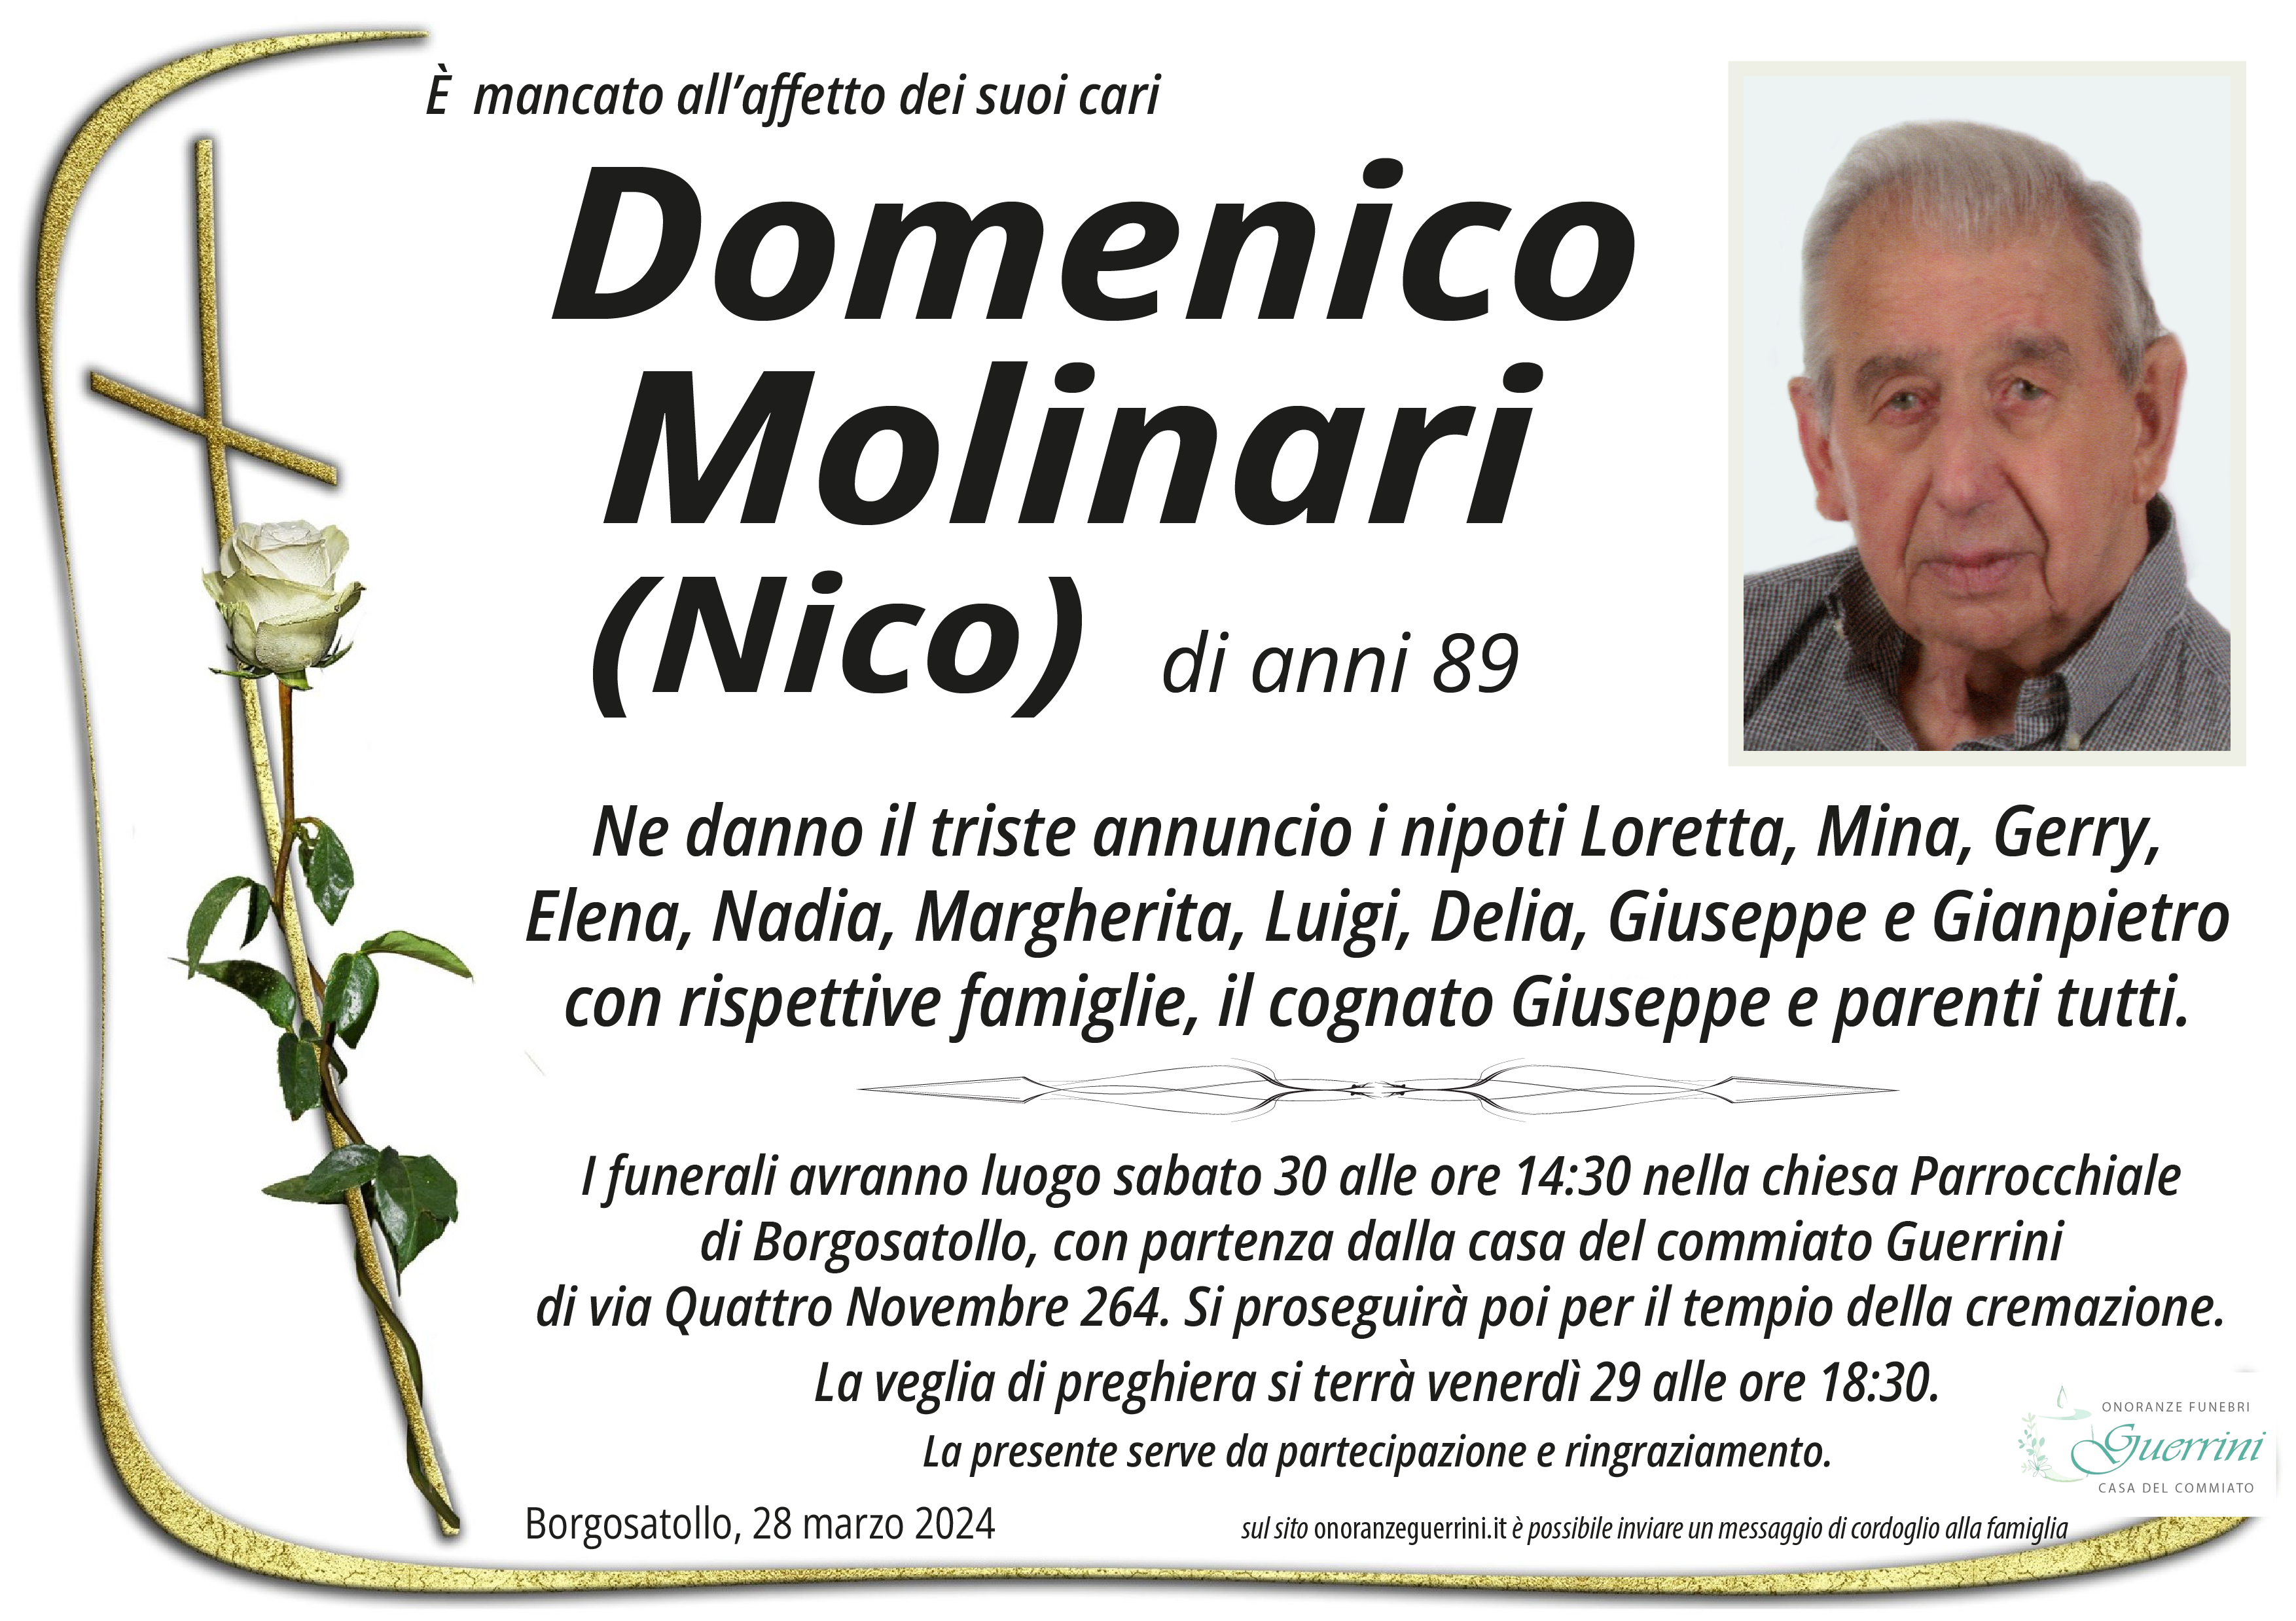 Al momento stai visualizzando Domenico Molinari (Nico)